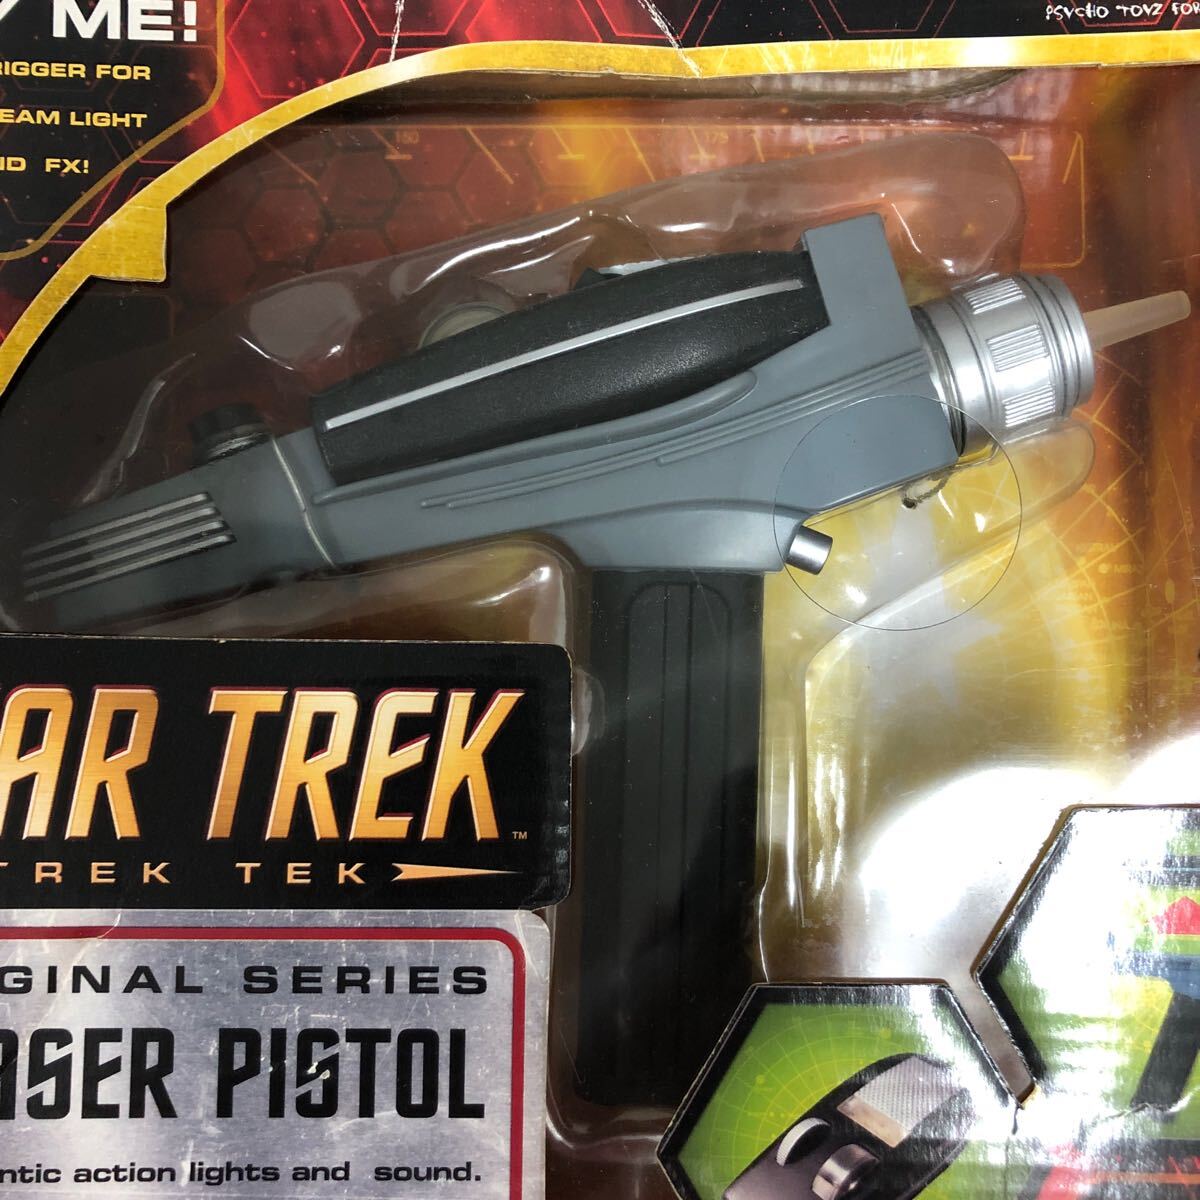 33F5201STAR TREK Star Trek Phaser ружье retro подлинная вещь игрушка фигурка ART.SYLUM TREKTEK оригинал серии phaserpistol